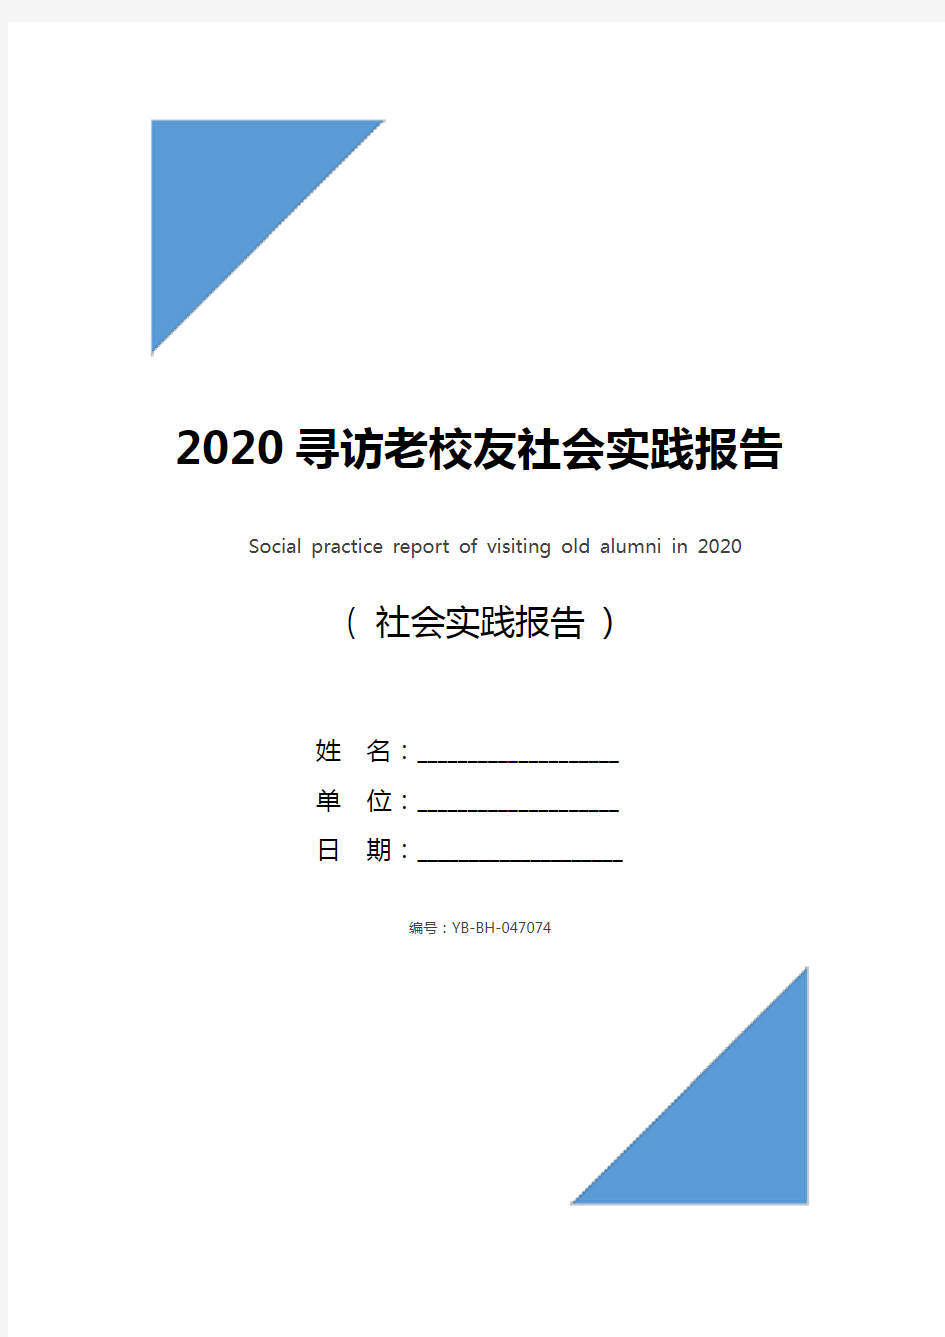 2020寻访老校友社会实践报告